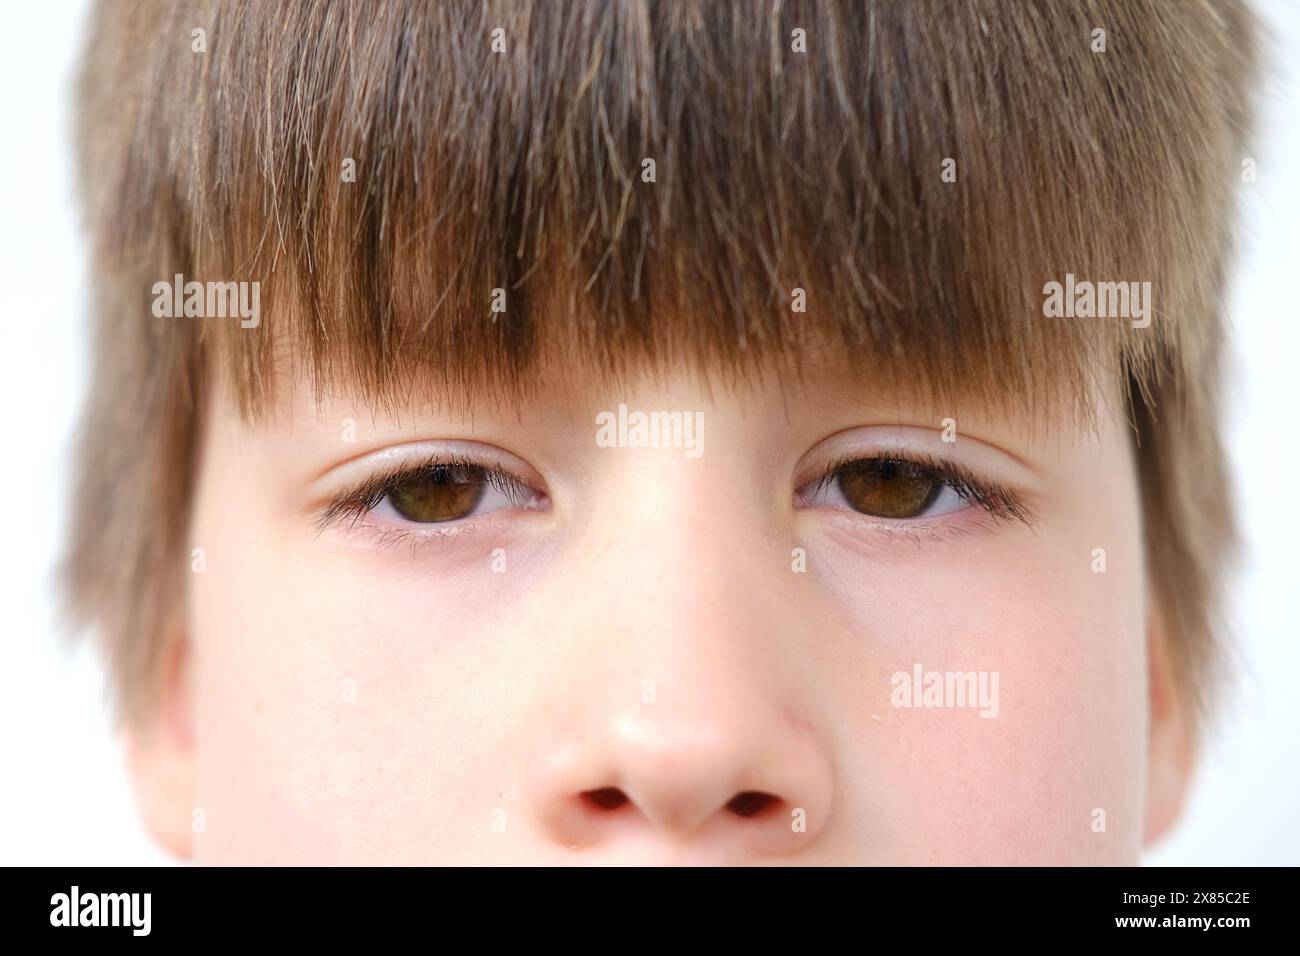 Nahaufnahme Teil Kind Gesicht, Junge 8 Jahre alt, menschliches Auge direkt schauen, Sehuntersuchung, Diagnose, Behandlung Augenerkrankungen, Augenlider, Emotionen Stockfoto